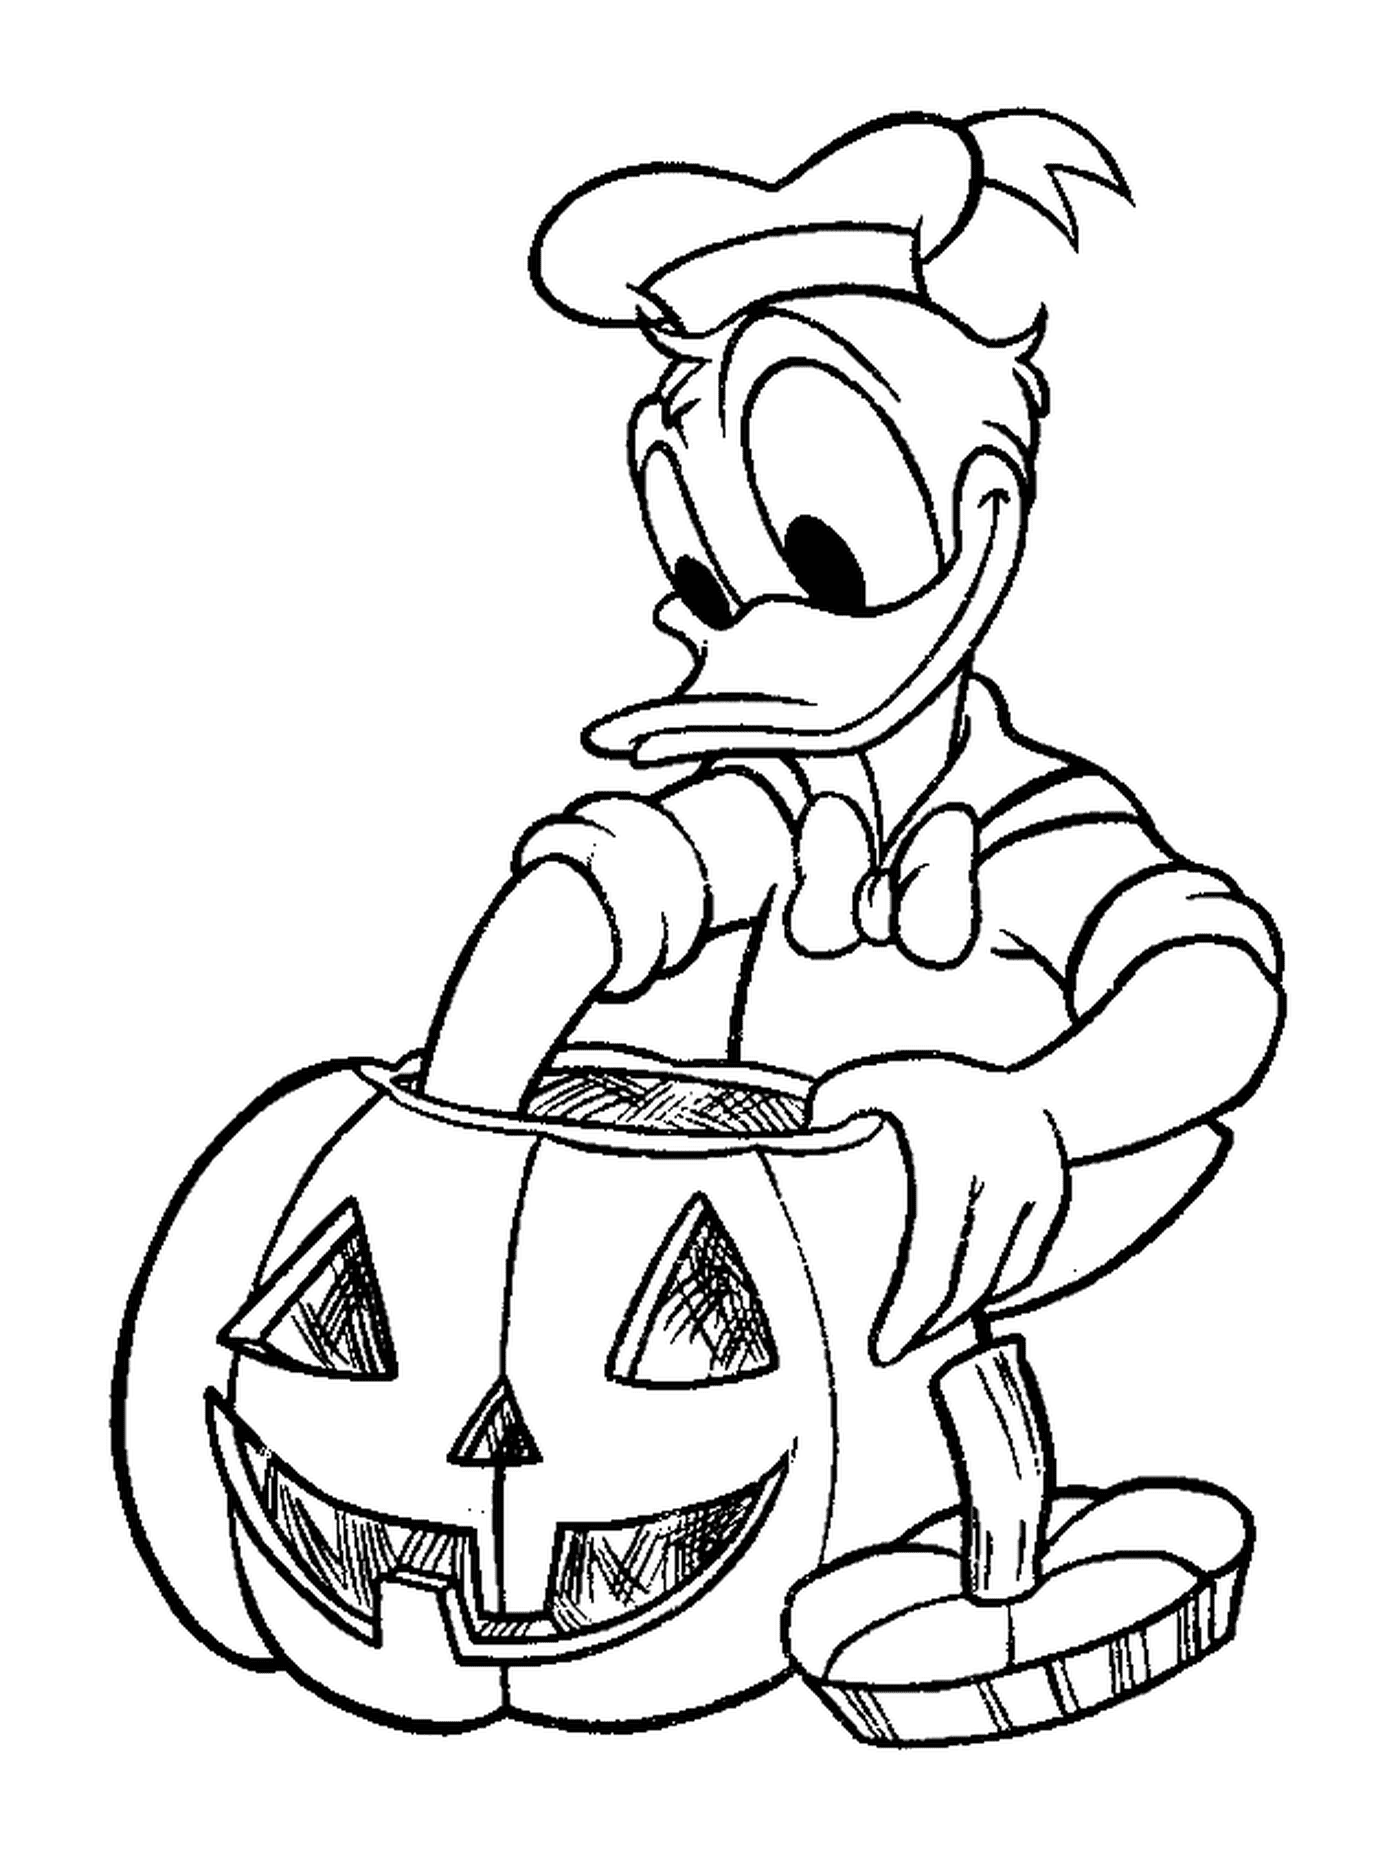  Donald hace su calabaza para Halloween 